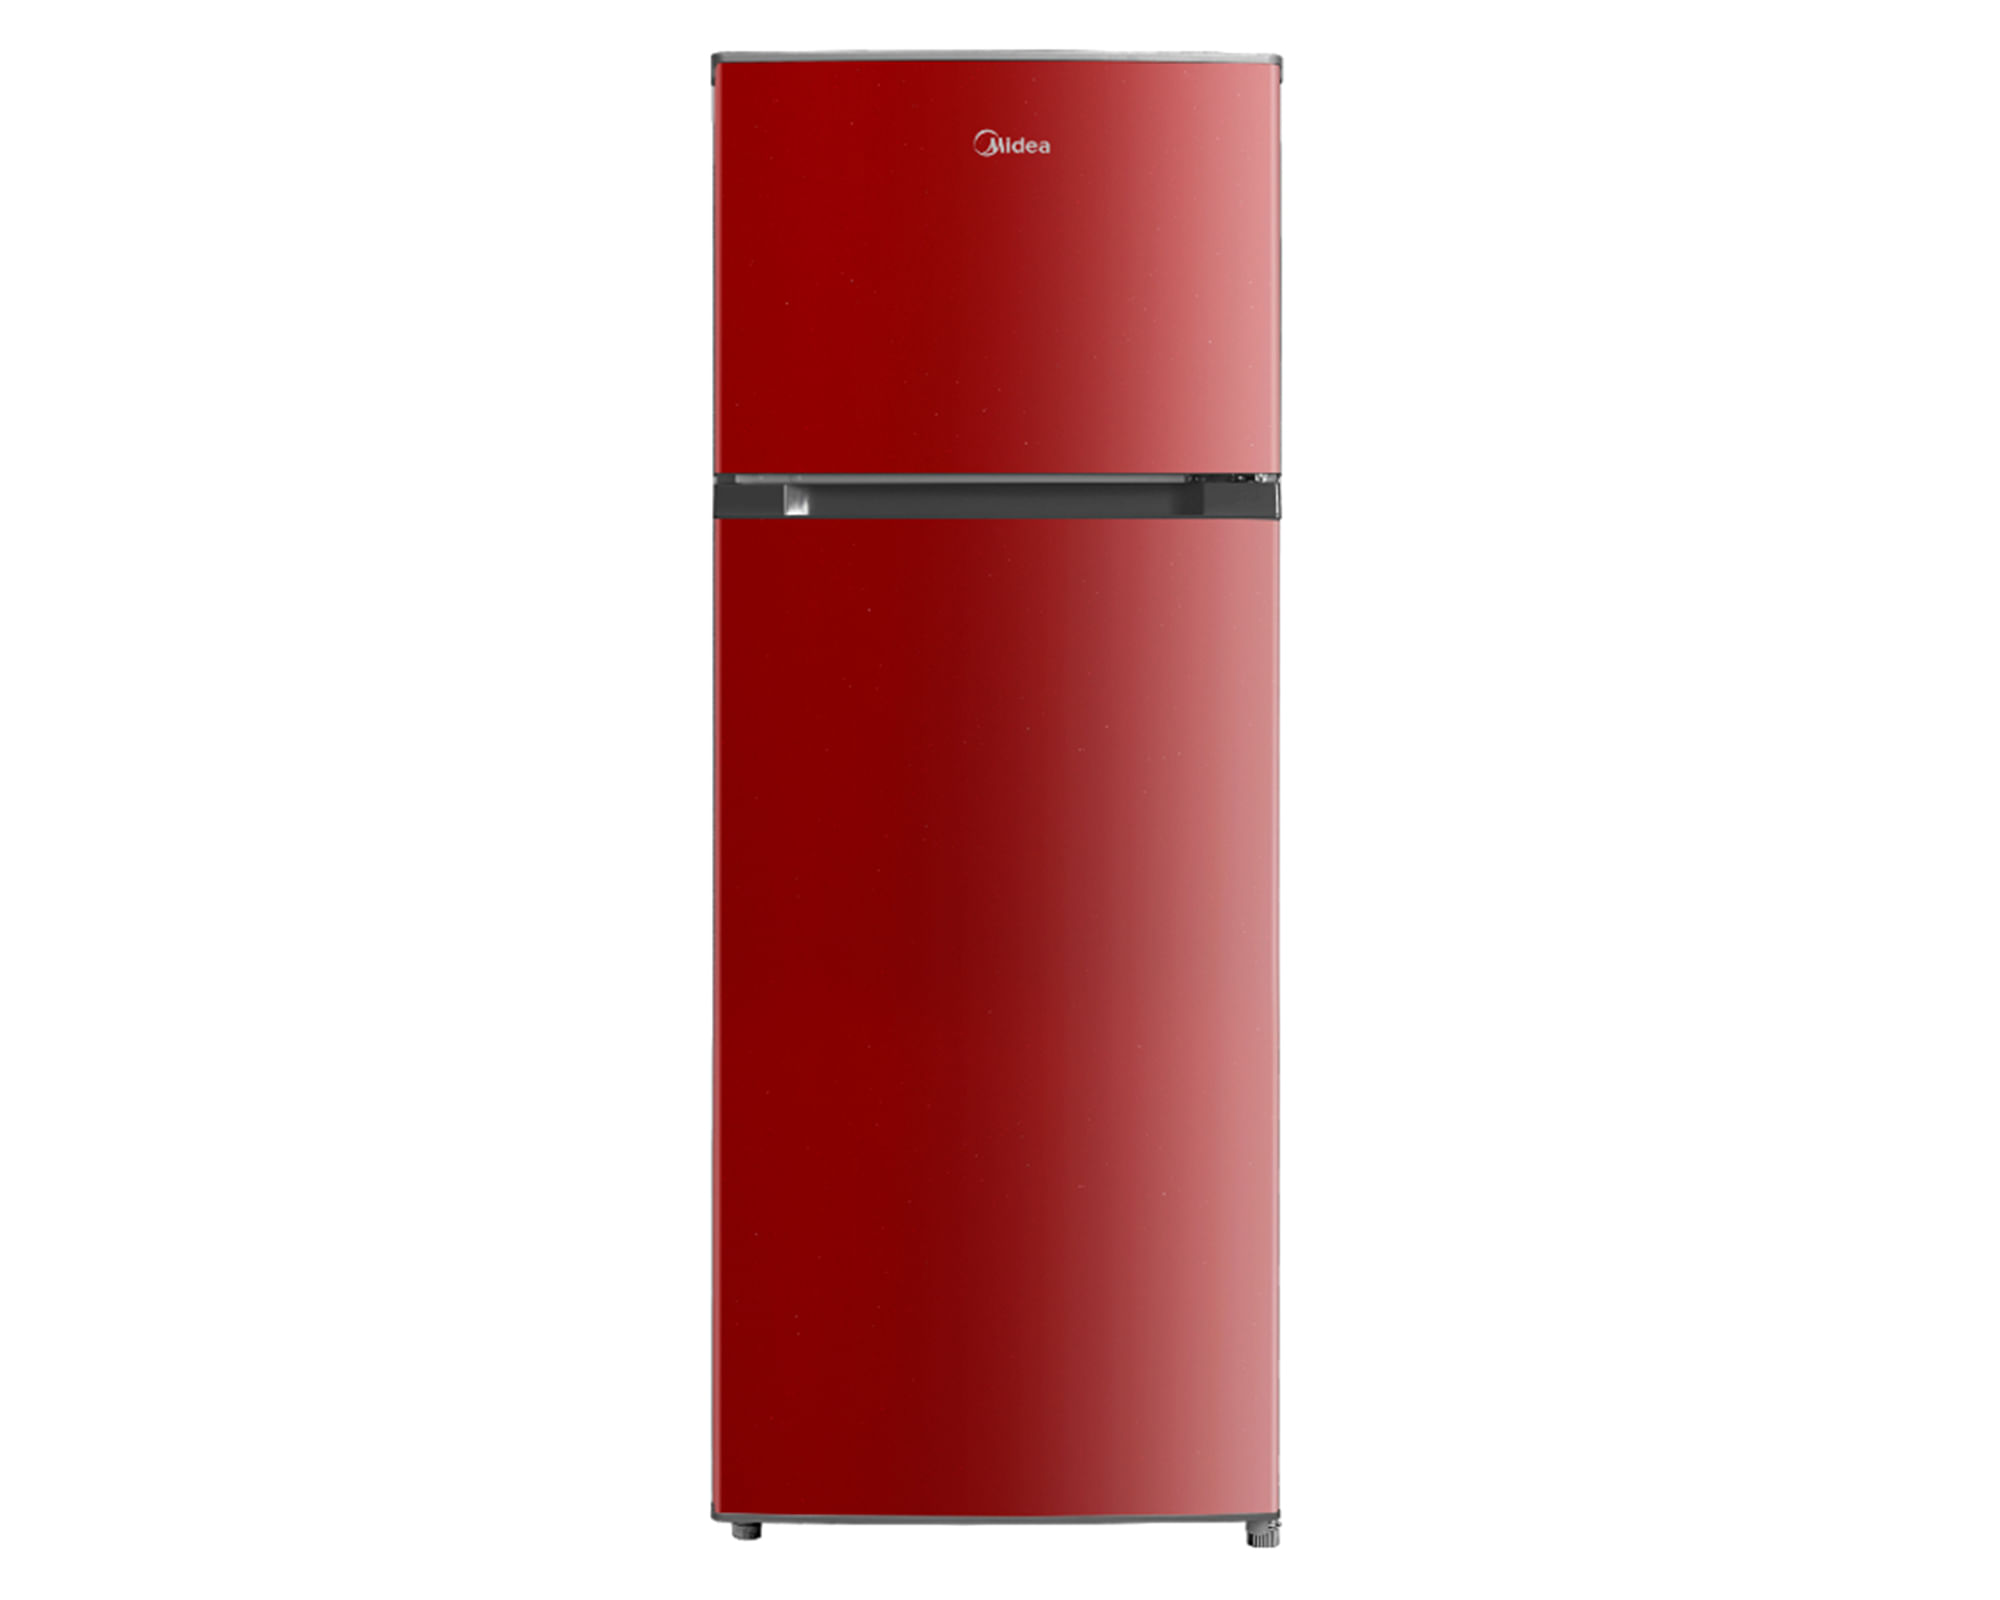 Refrigerador Top Mount frío directo 207 litros rojo